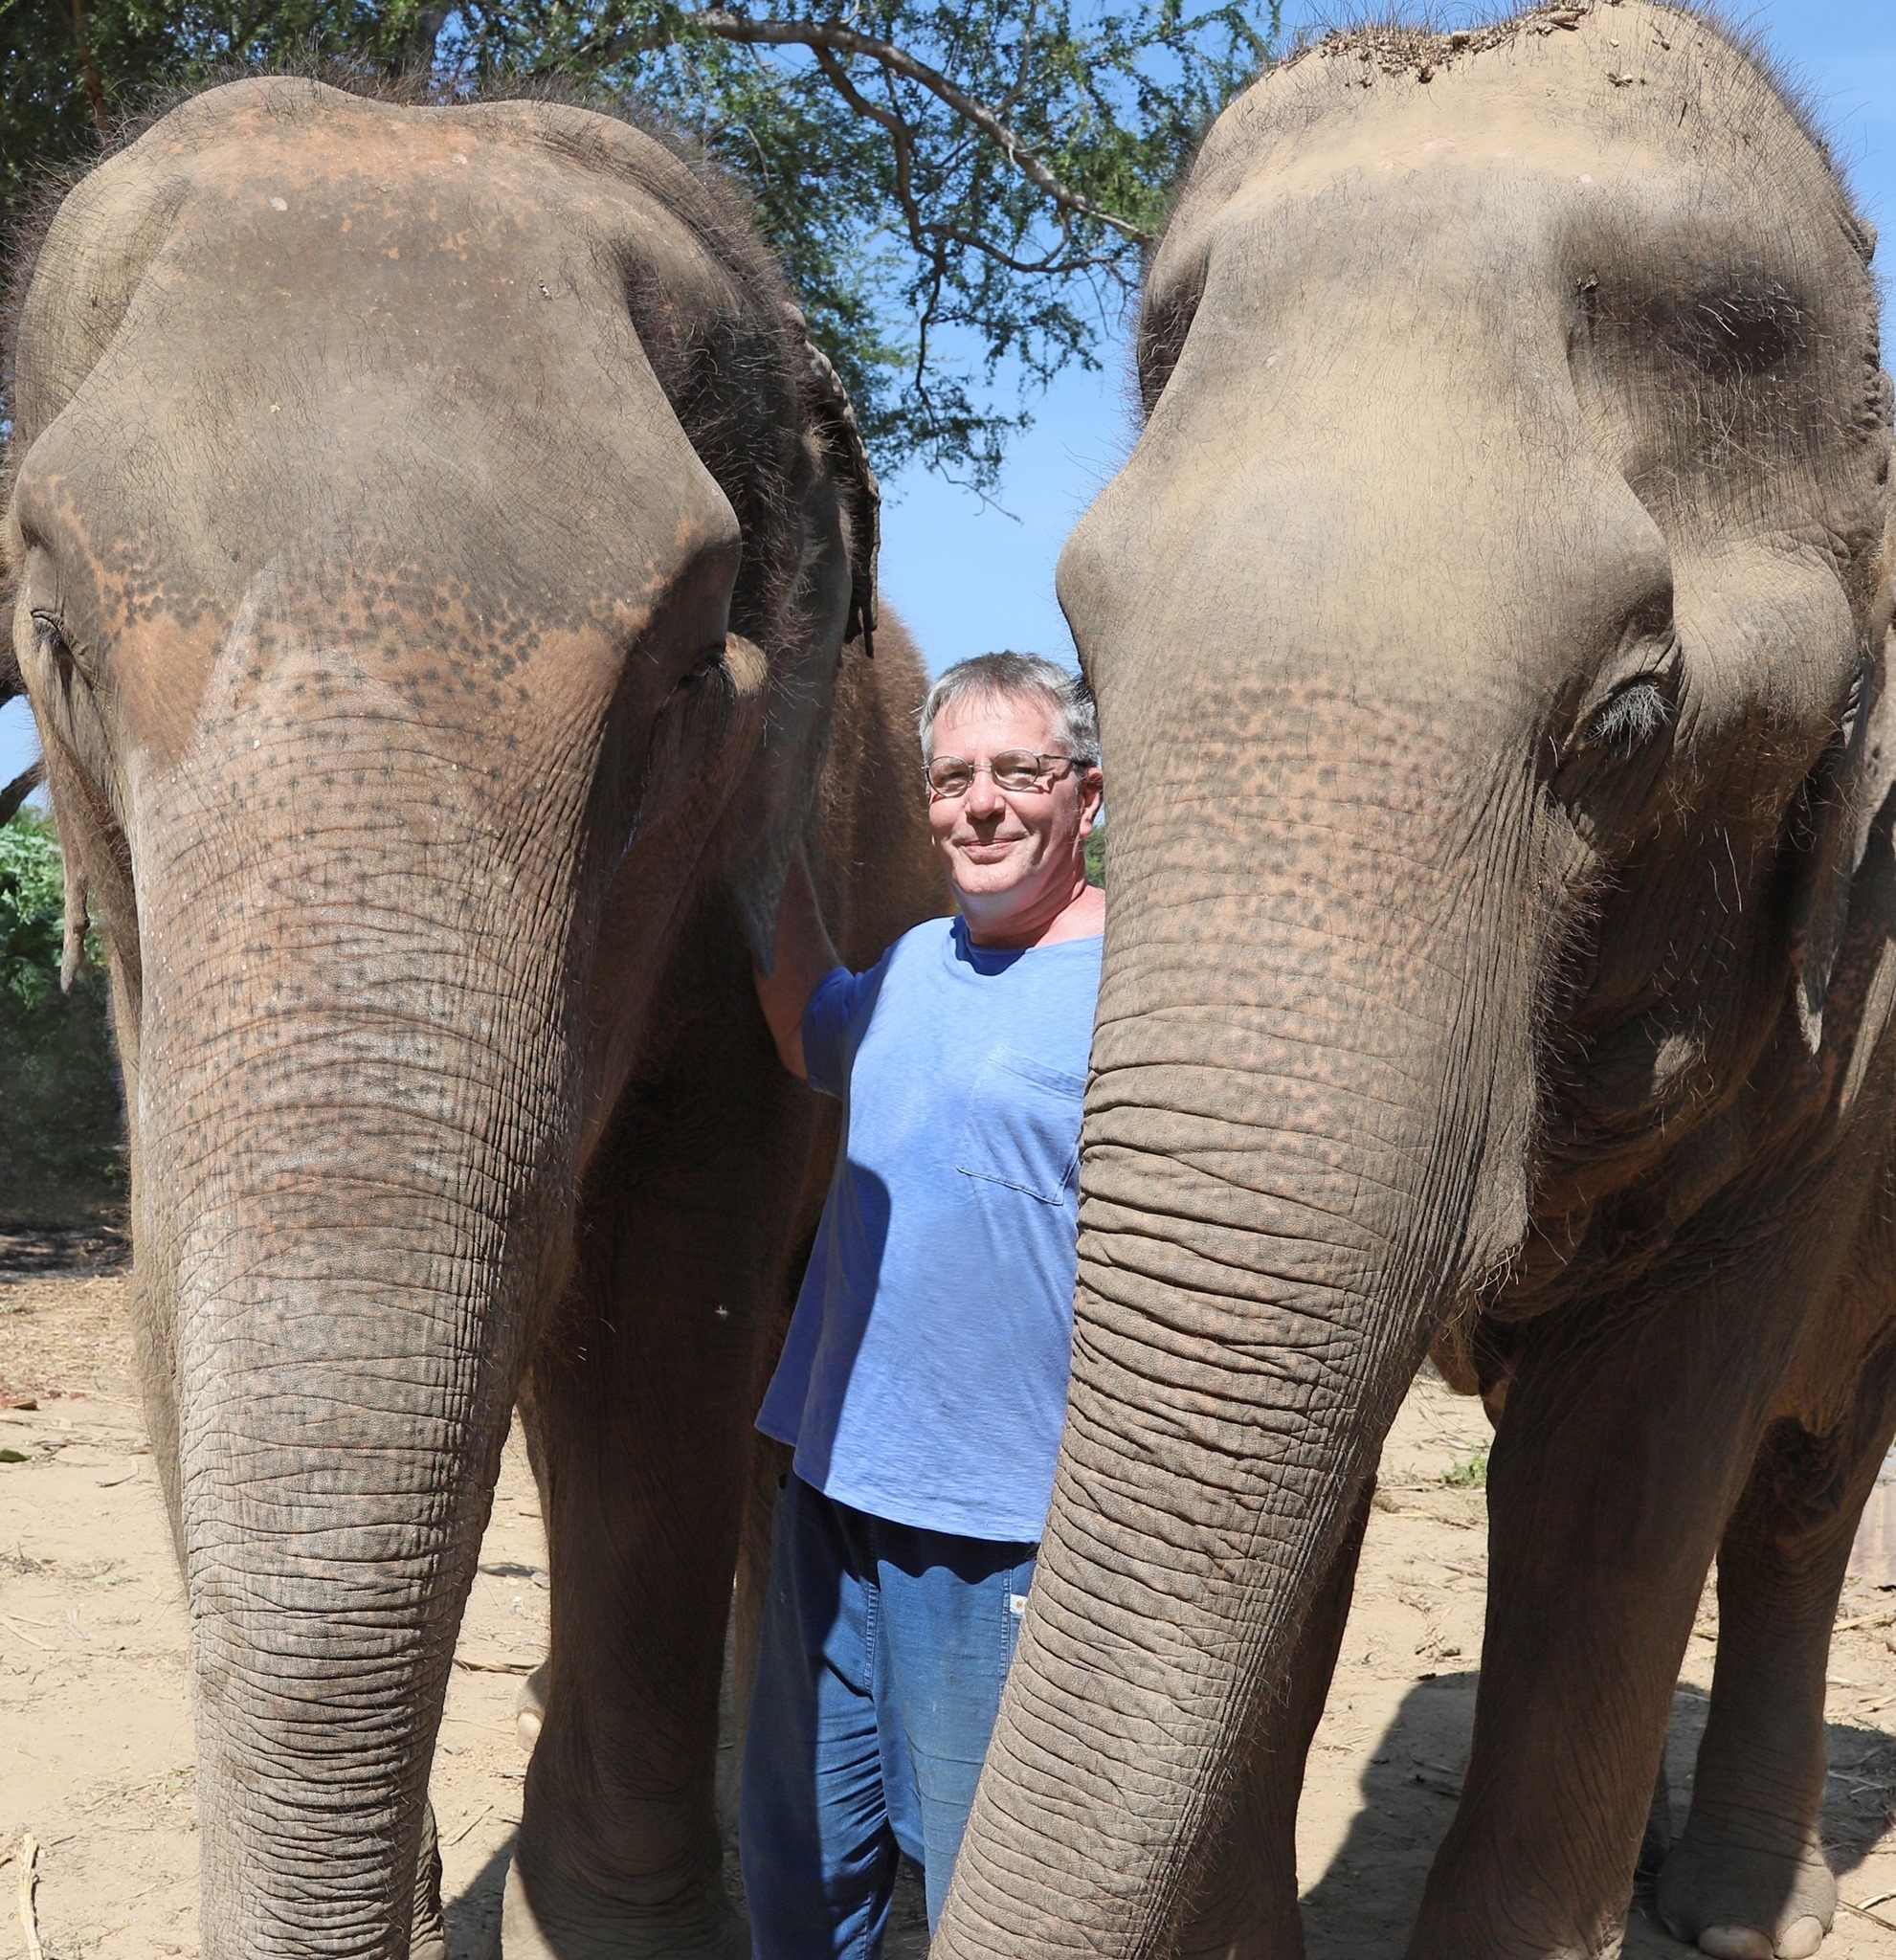 En el santuario los elefantes tienen la libertad de alejarse de Barton, pero sin excepción eligen quedarse y escuchar.